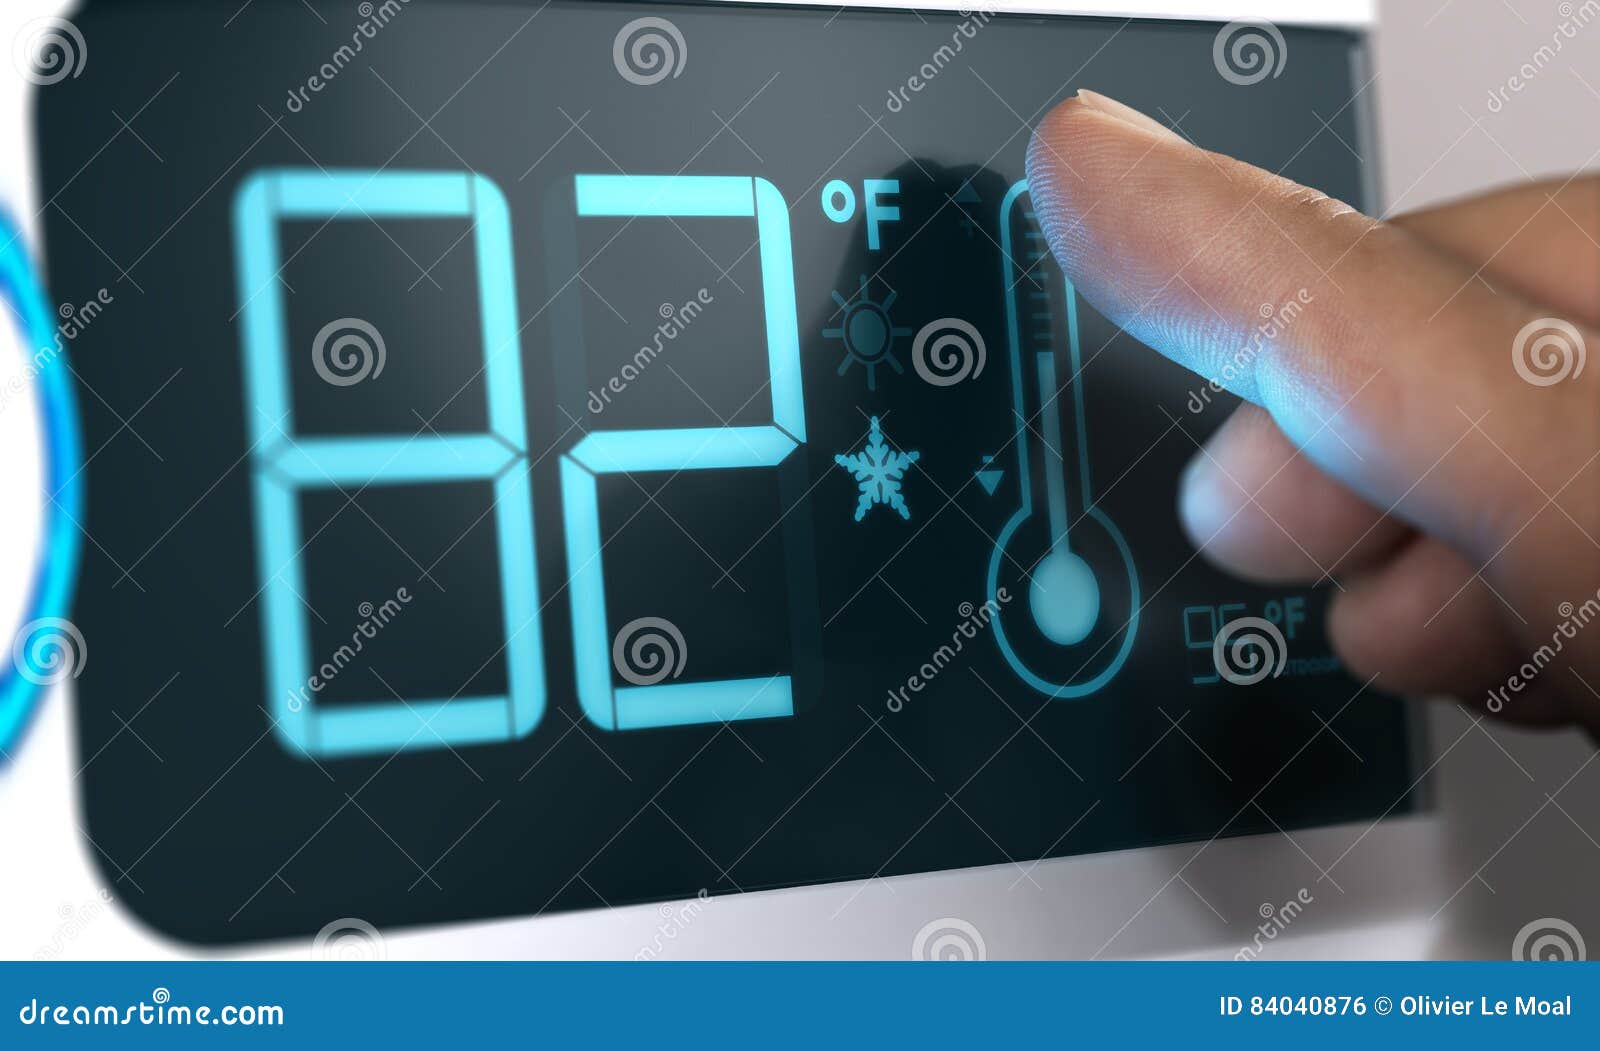 Regolatore Di Temperatura Del Termostato Di Digital Set a 82 Gradi Di  Fahrenheit Illustrazione di Stock - Illustrazione di moderno,  visualizzazione: 84040876